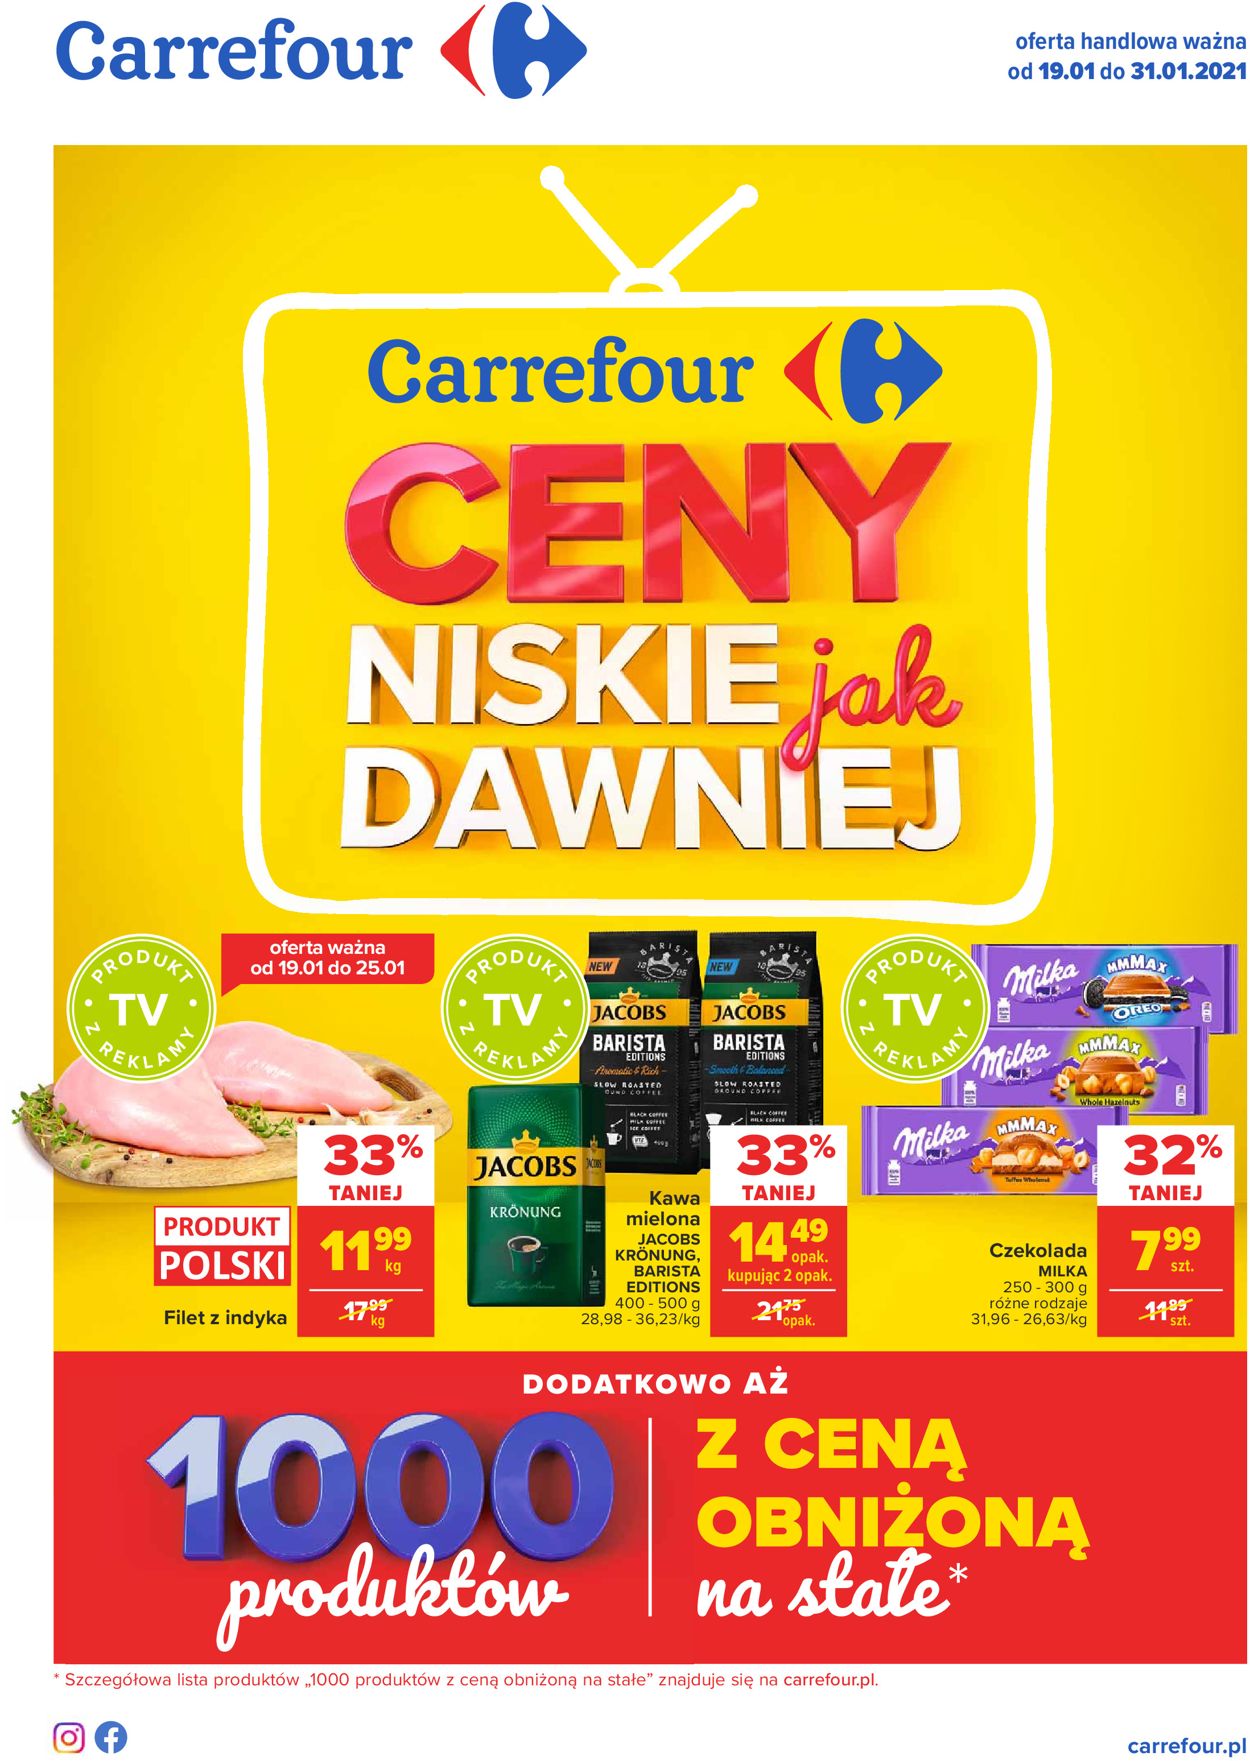 Carrefour Gazetka od 19.01.2021